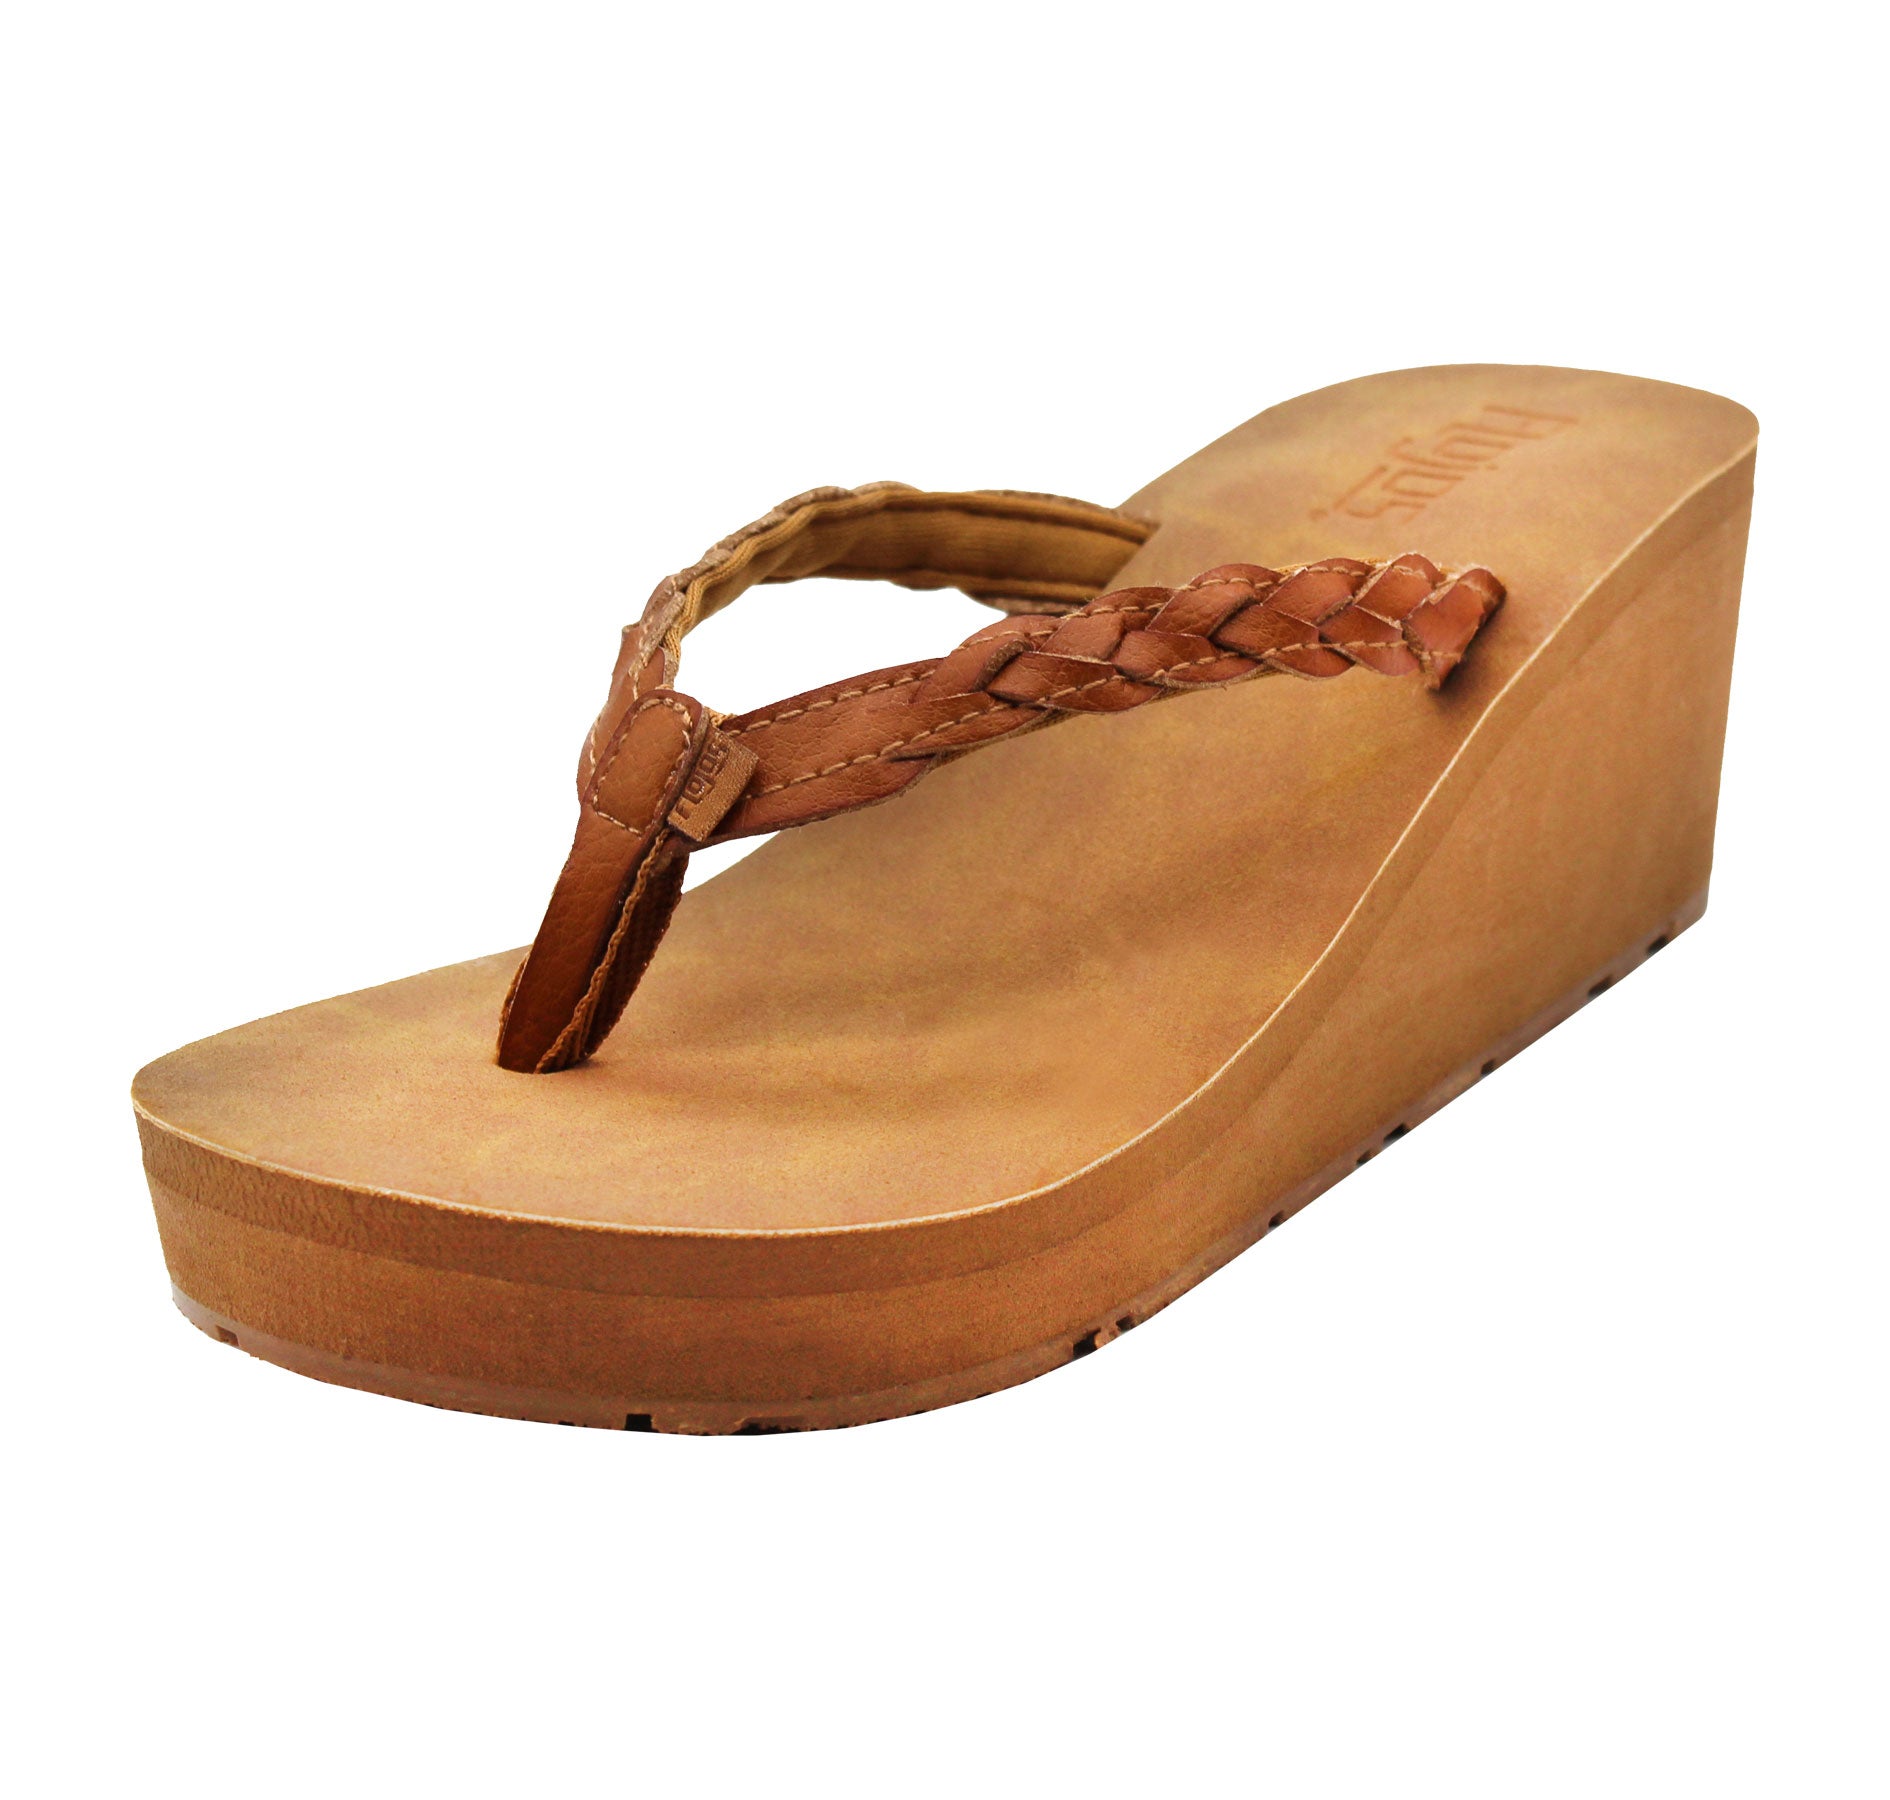 QLEYO Women's Wedge Flip Flop Sandals, Comfortable